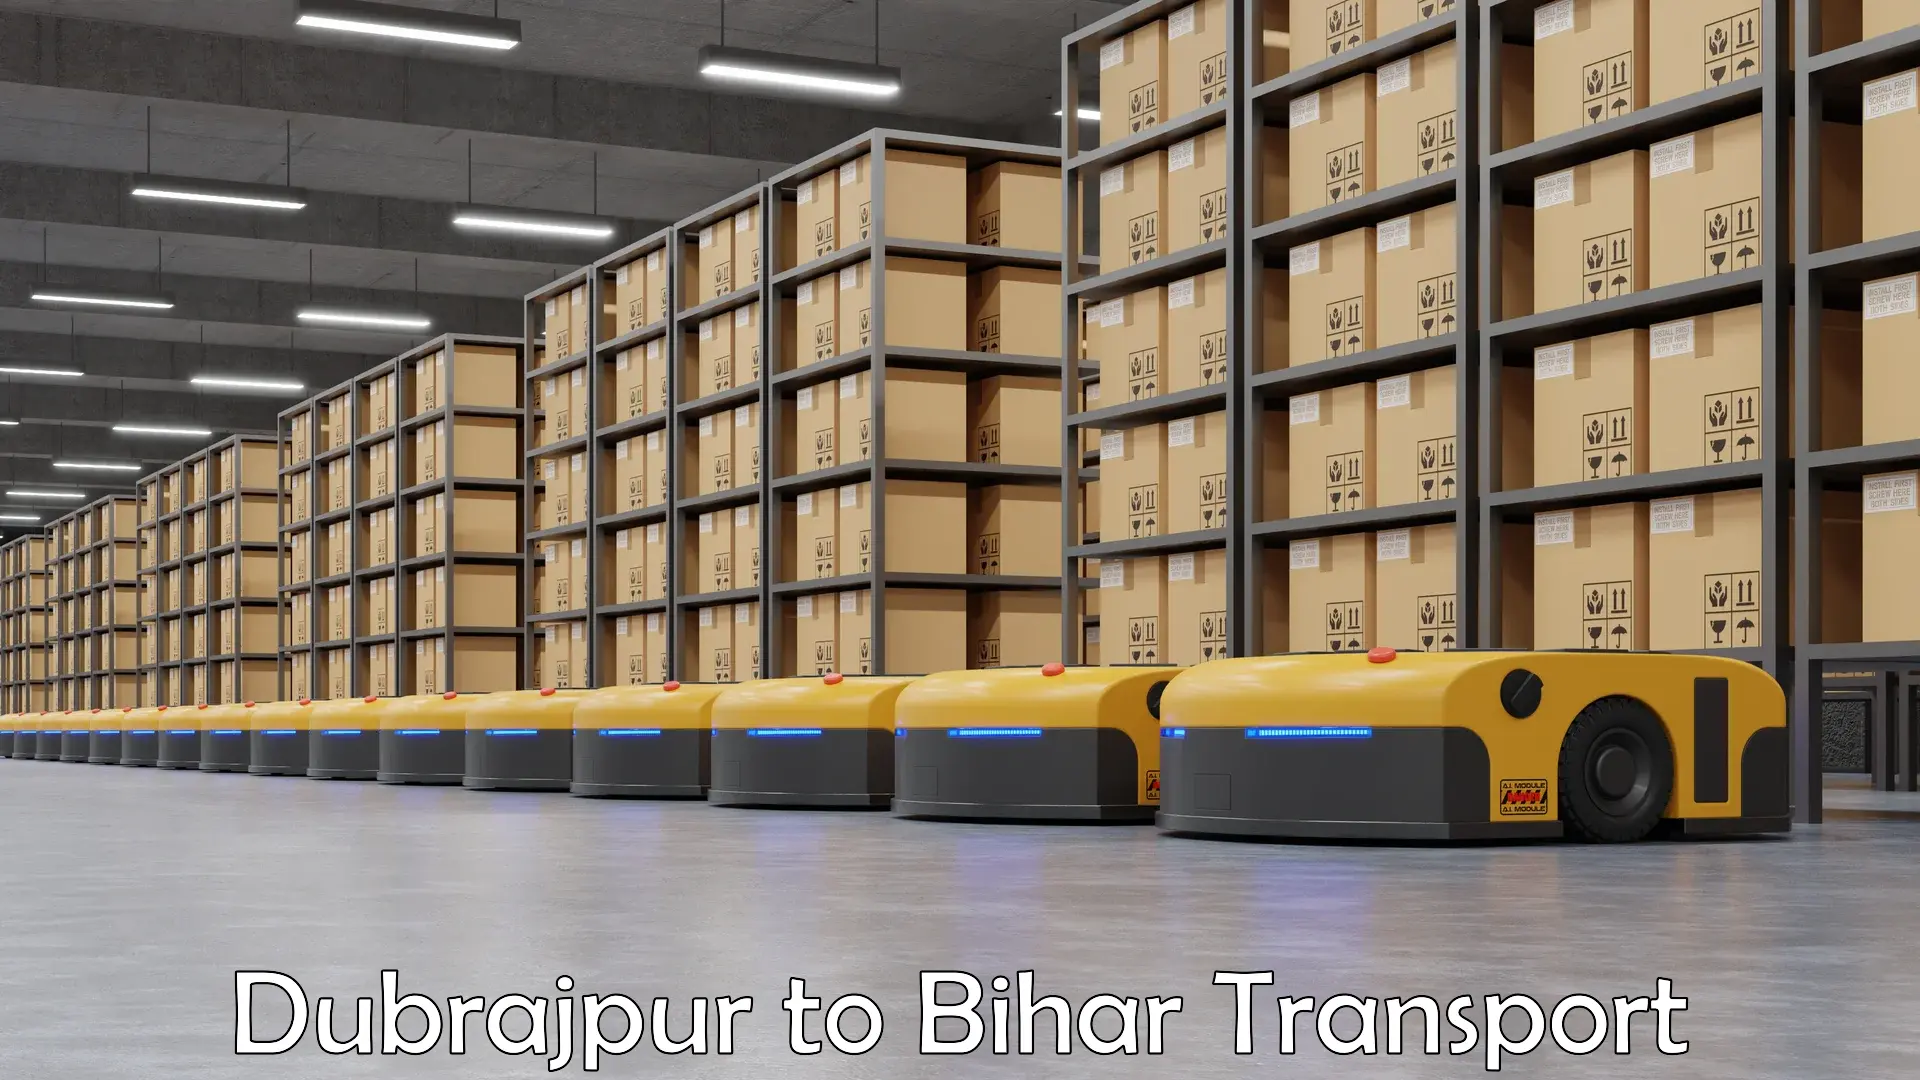 Transport in sharing Dubrajpur to Tekari